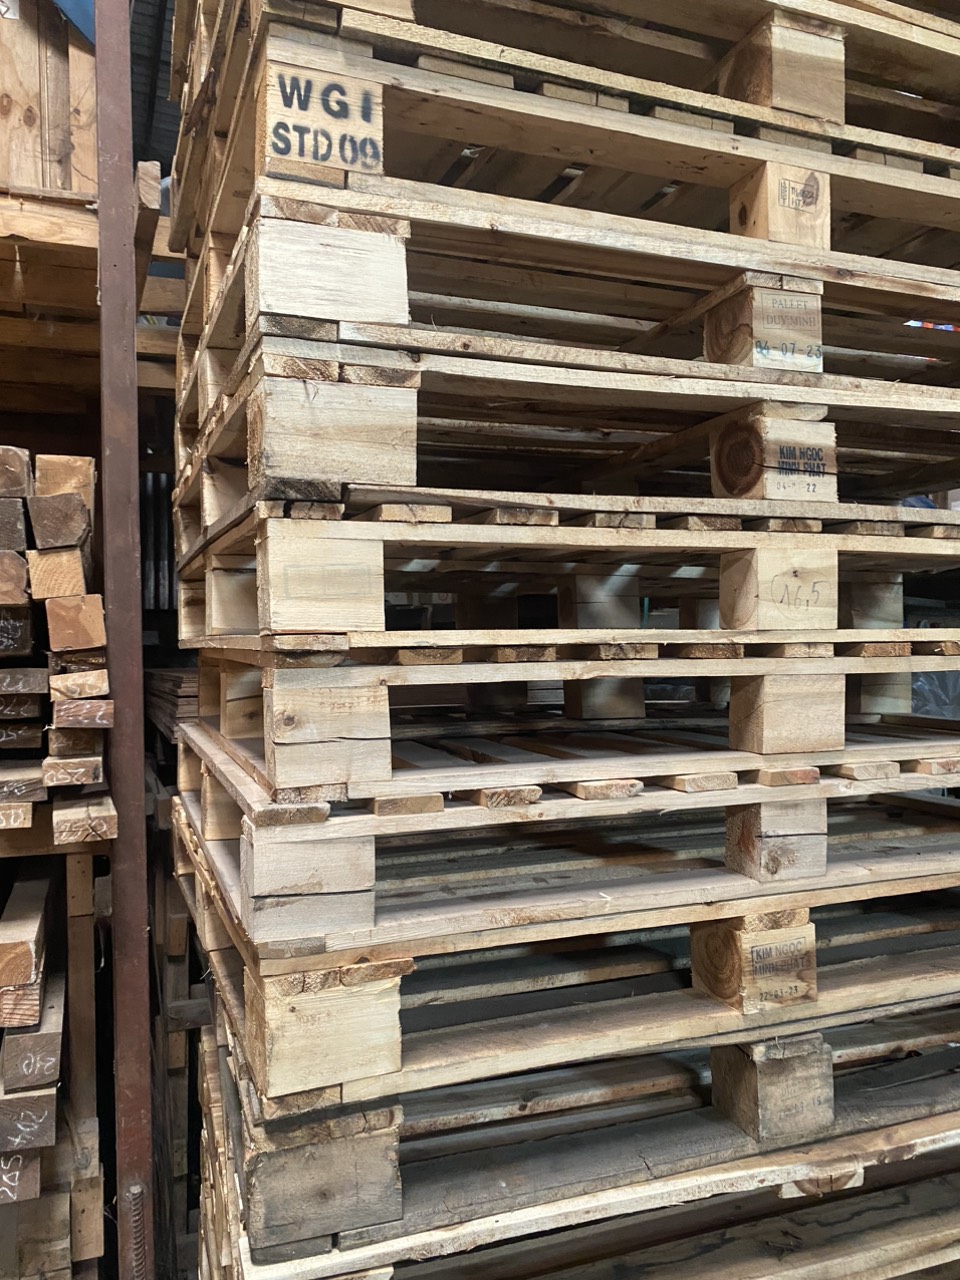 Pallet gỗ - Pallet Đạt Thành - Công Ty TNHH Một Thành Viên Sản Xuất Thương Mại Dịch Vụ Xây Dựng Đạt Thành